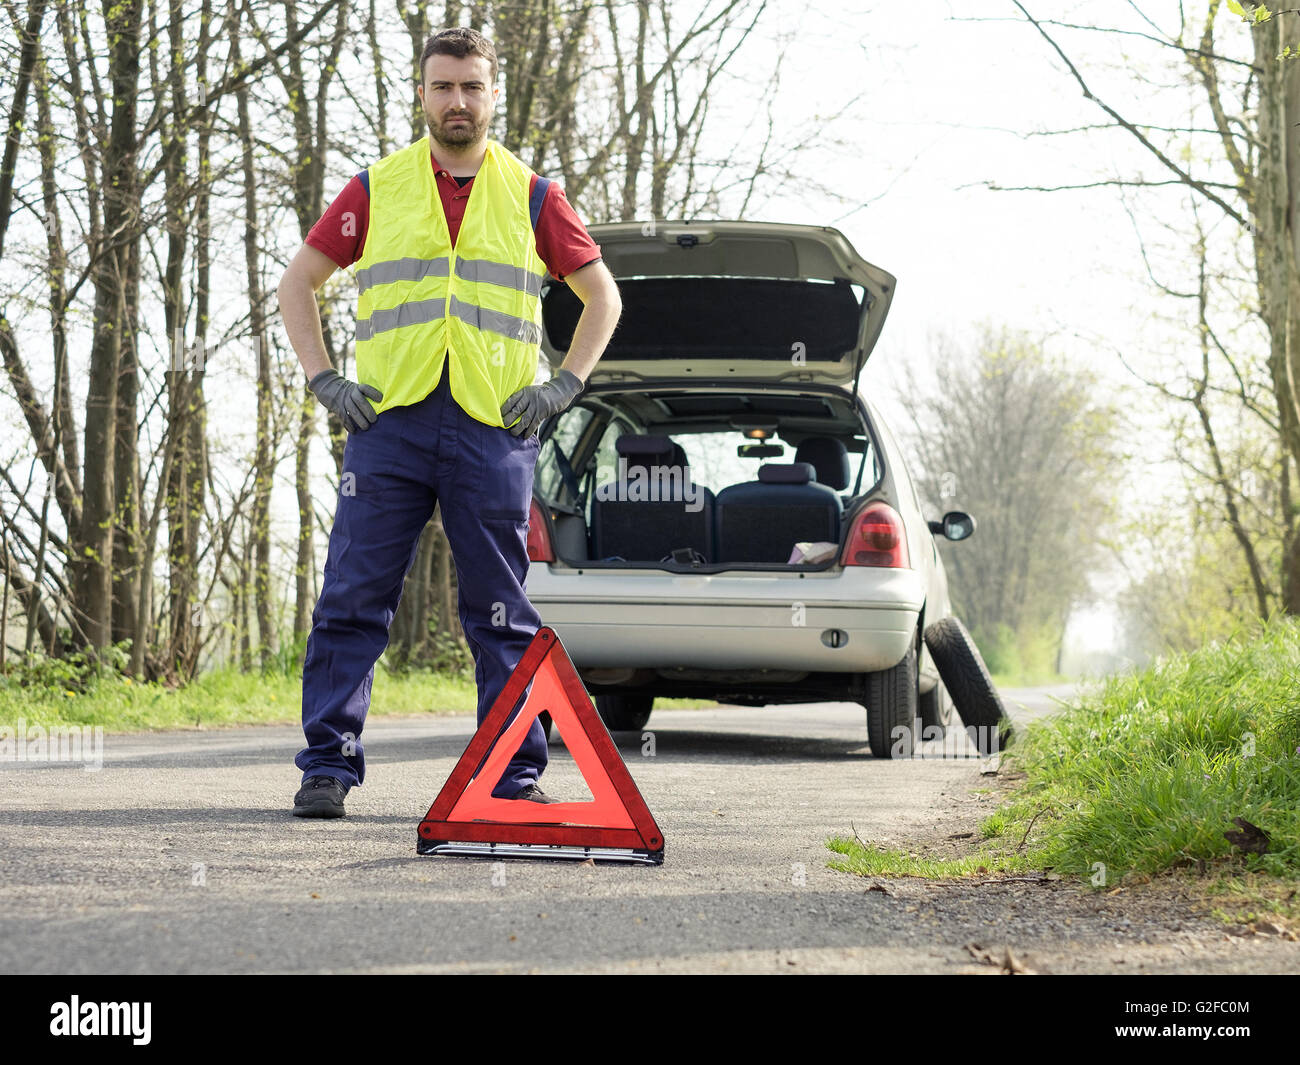 Warndreieck wird aufgestellt und warnt vor Auto mit Panne oder Unfall Stock  Photo